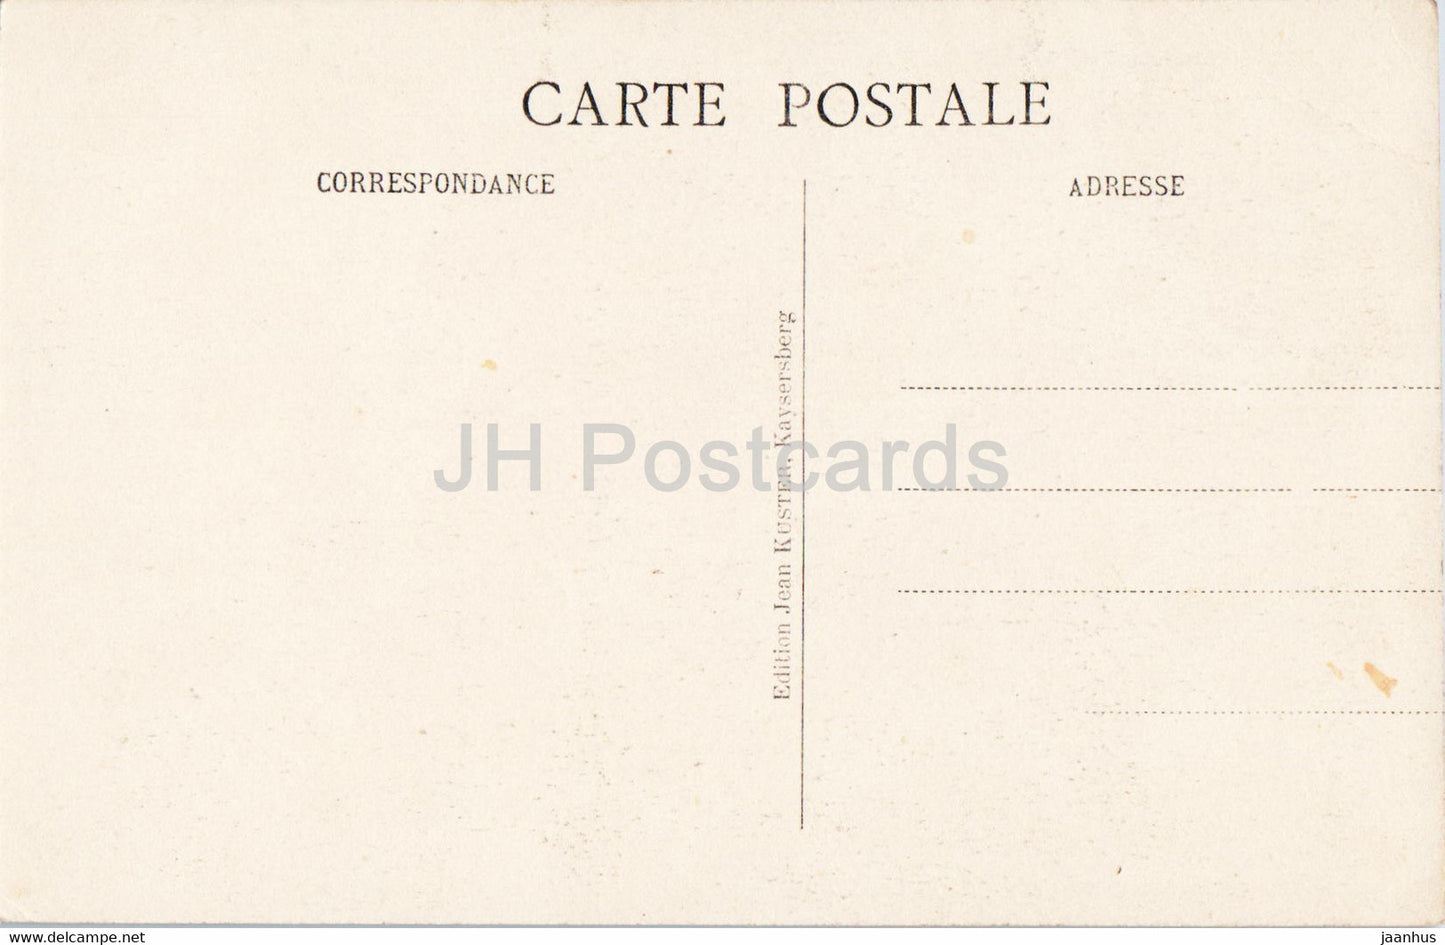 Le Miracle des Trois Epis - old postcard - France - unused